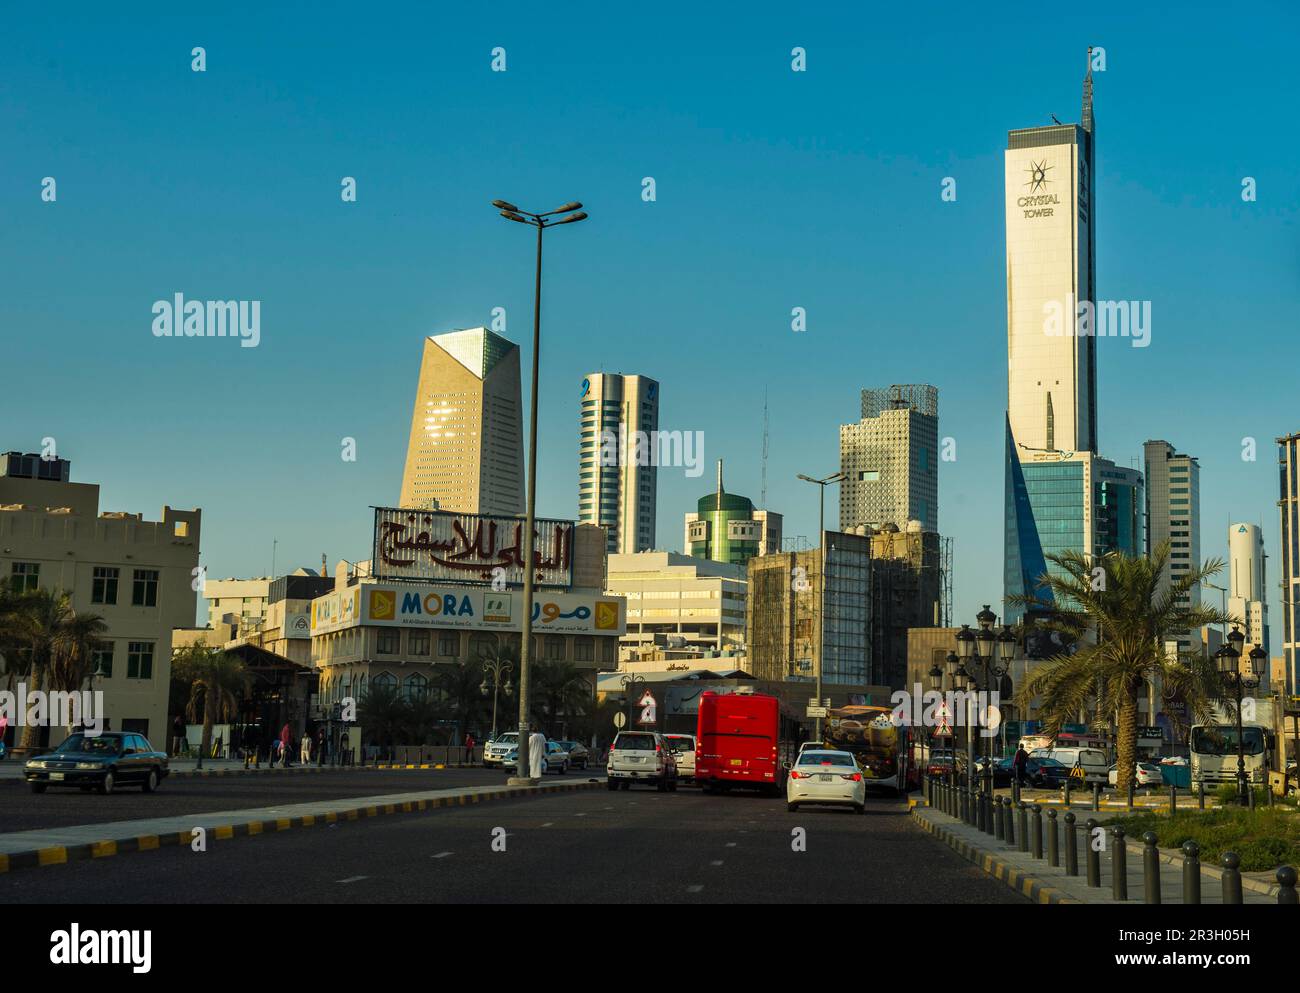 L'horizon de la ville de Koweït, Koweït Banque D'Images